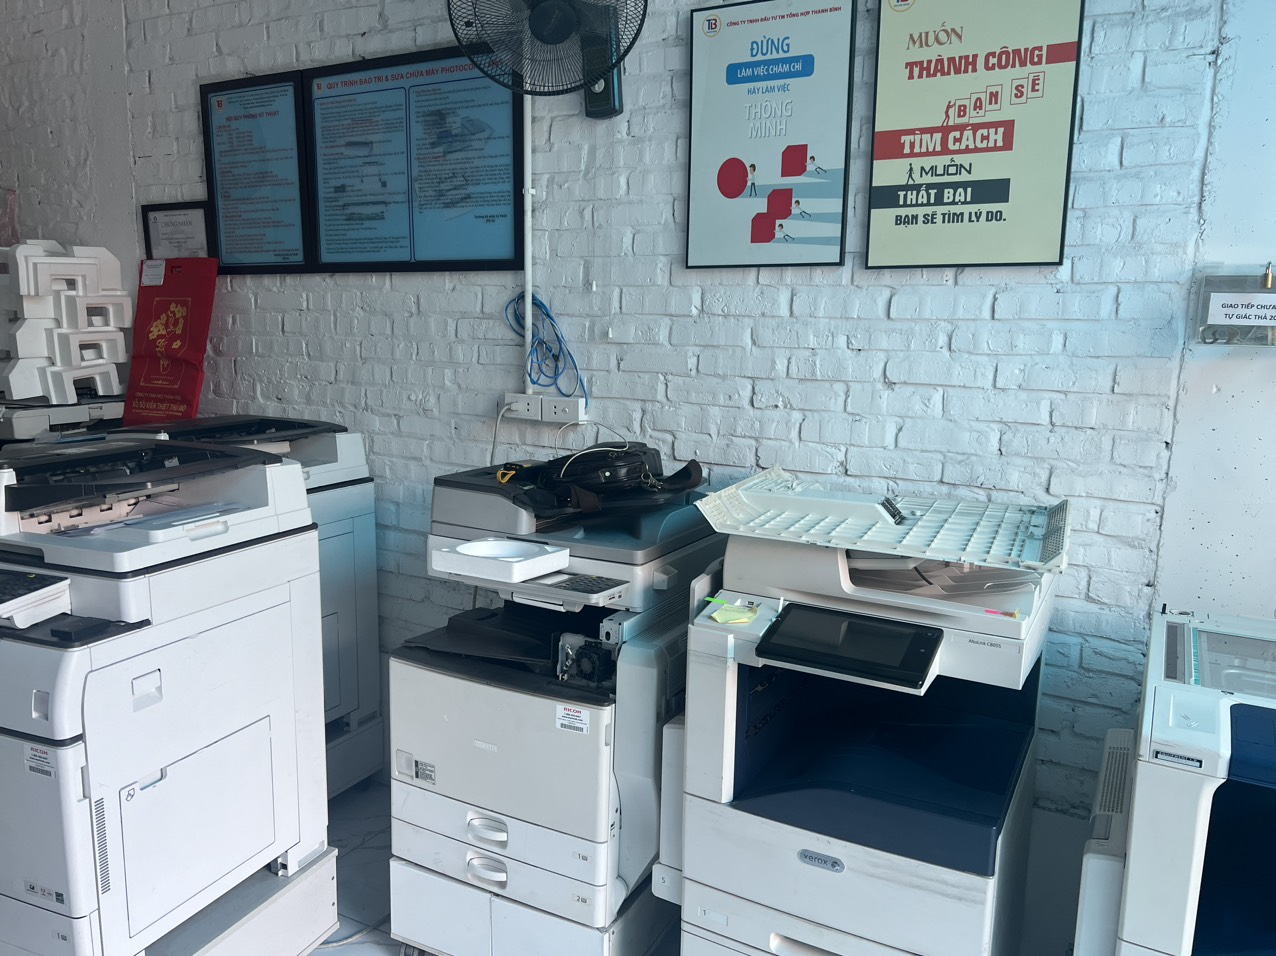 Cho thuê máy photocopy tại Hải Phòng, Hải Dương giá rẻ, uy tín, tận nơi